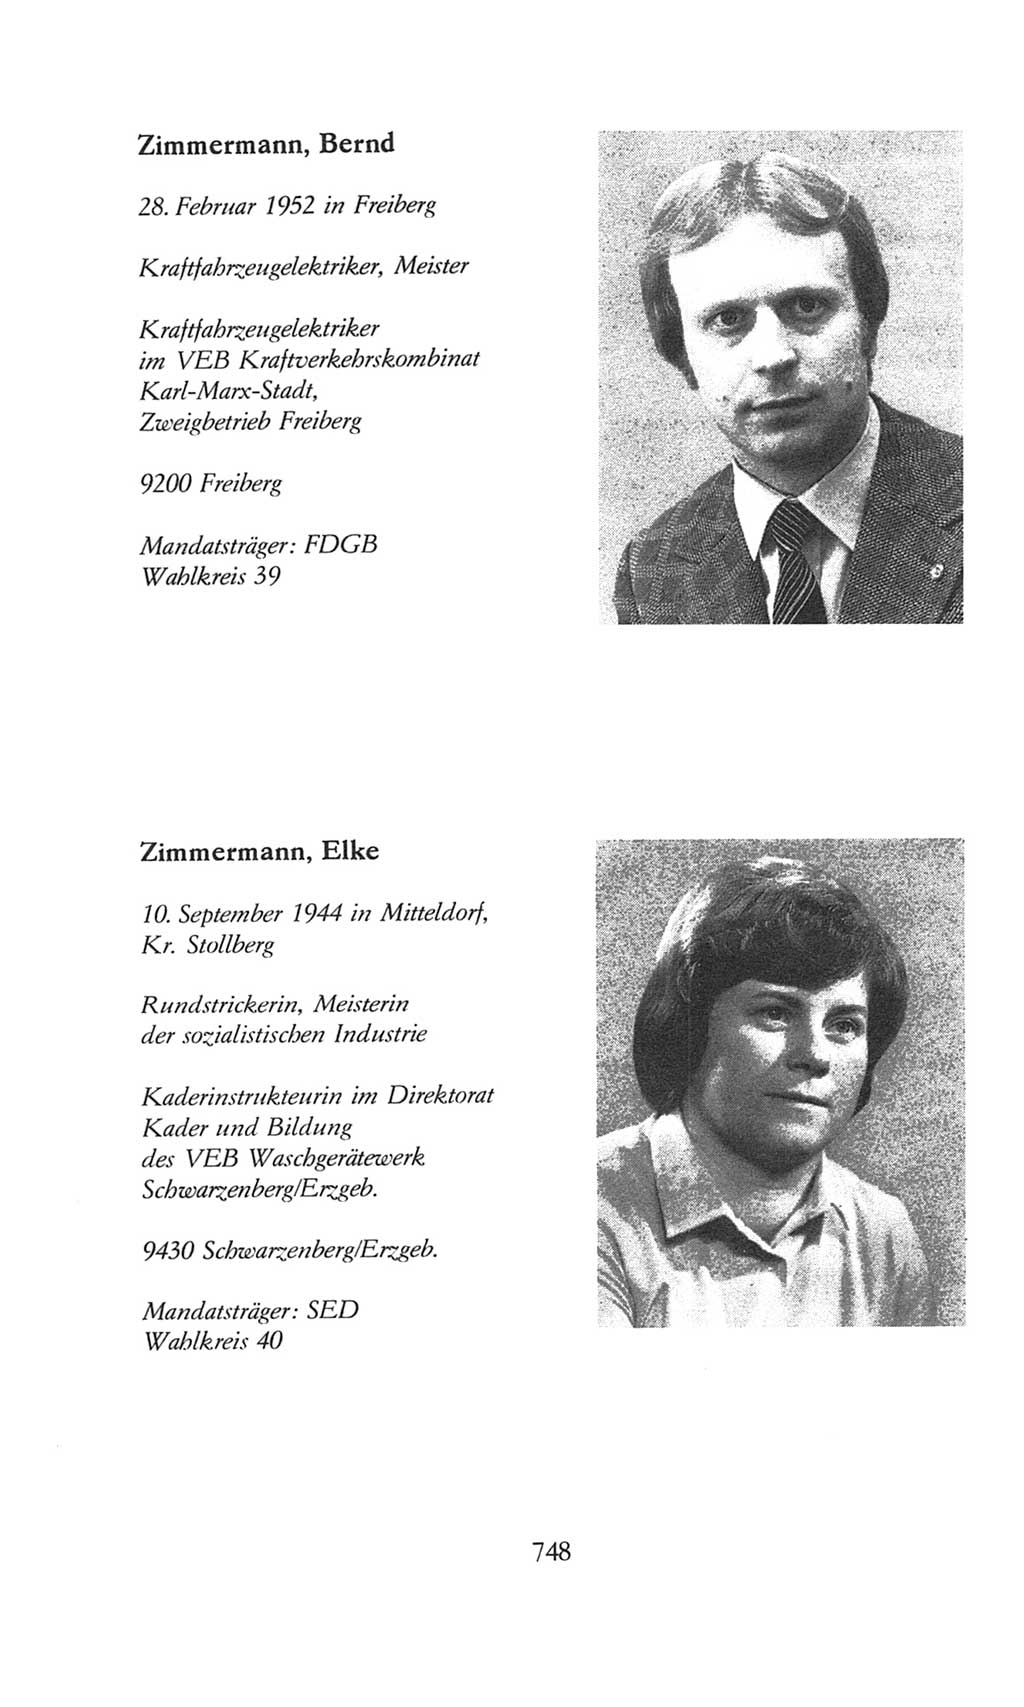 Volkskammer (VK) der Deutschen Demokratischen Republik (DDR), 8. Wahlperiode 1981-1986, Seite 748 (VK. DDR 8. WP. 1981-1986, S. 748)